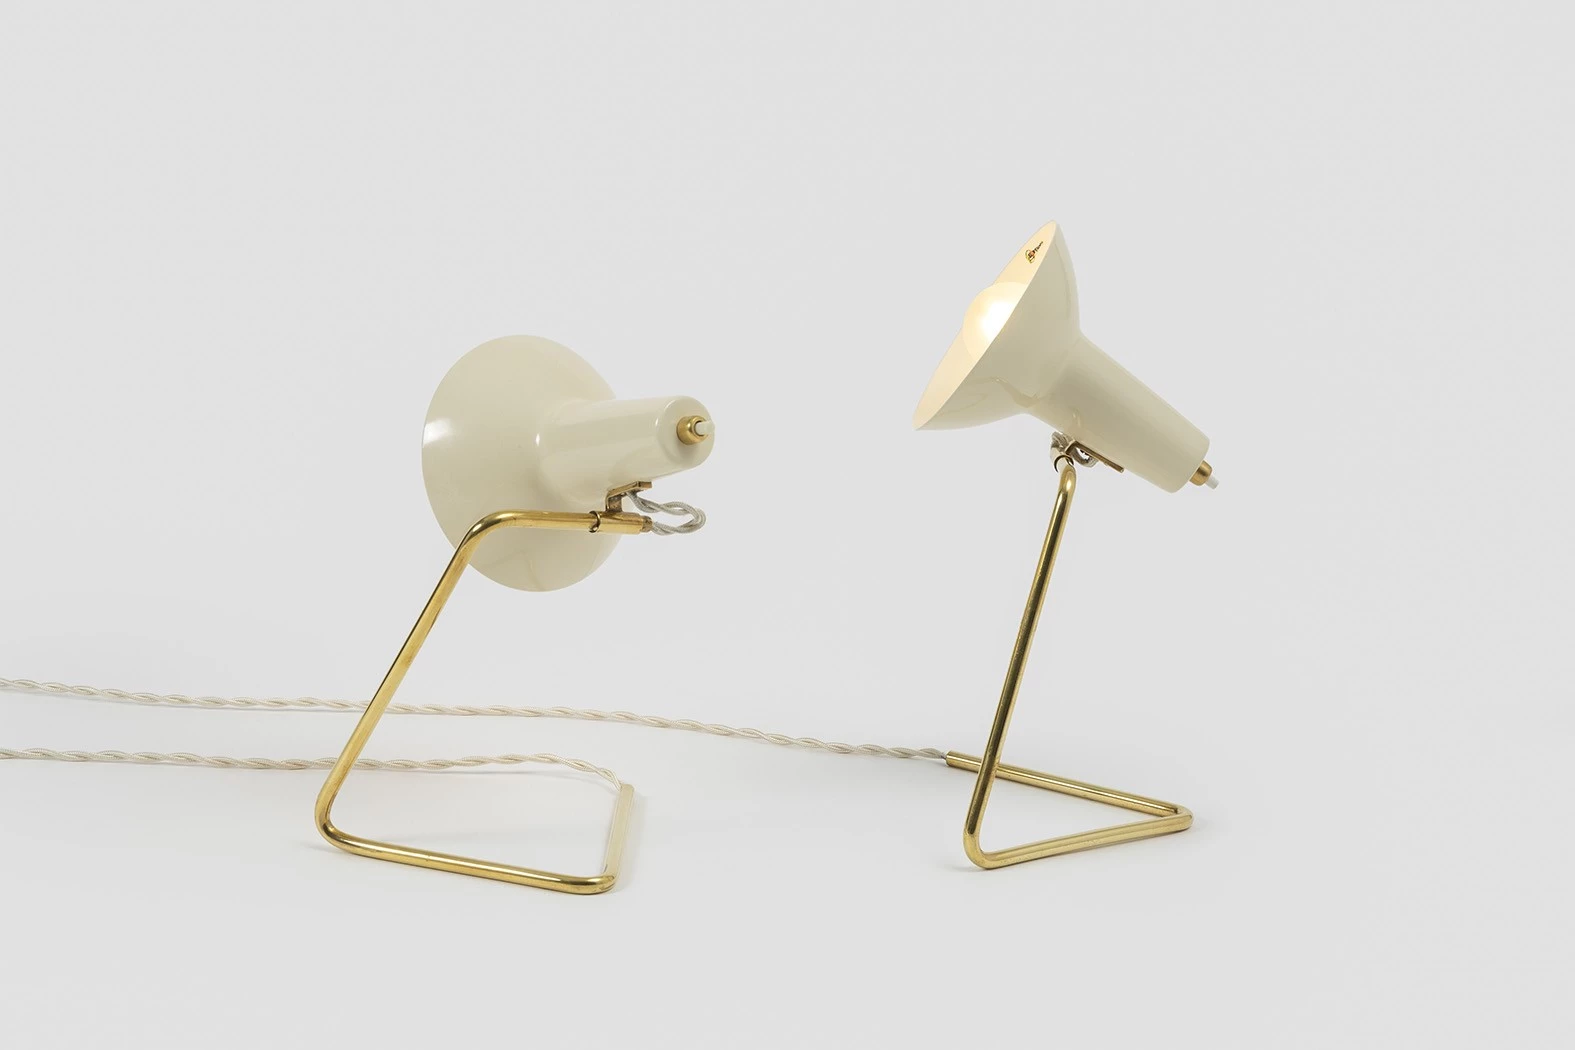 551 - Gino Sarfatti - Table light - Galerie kreo